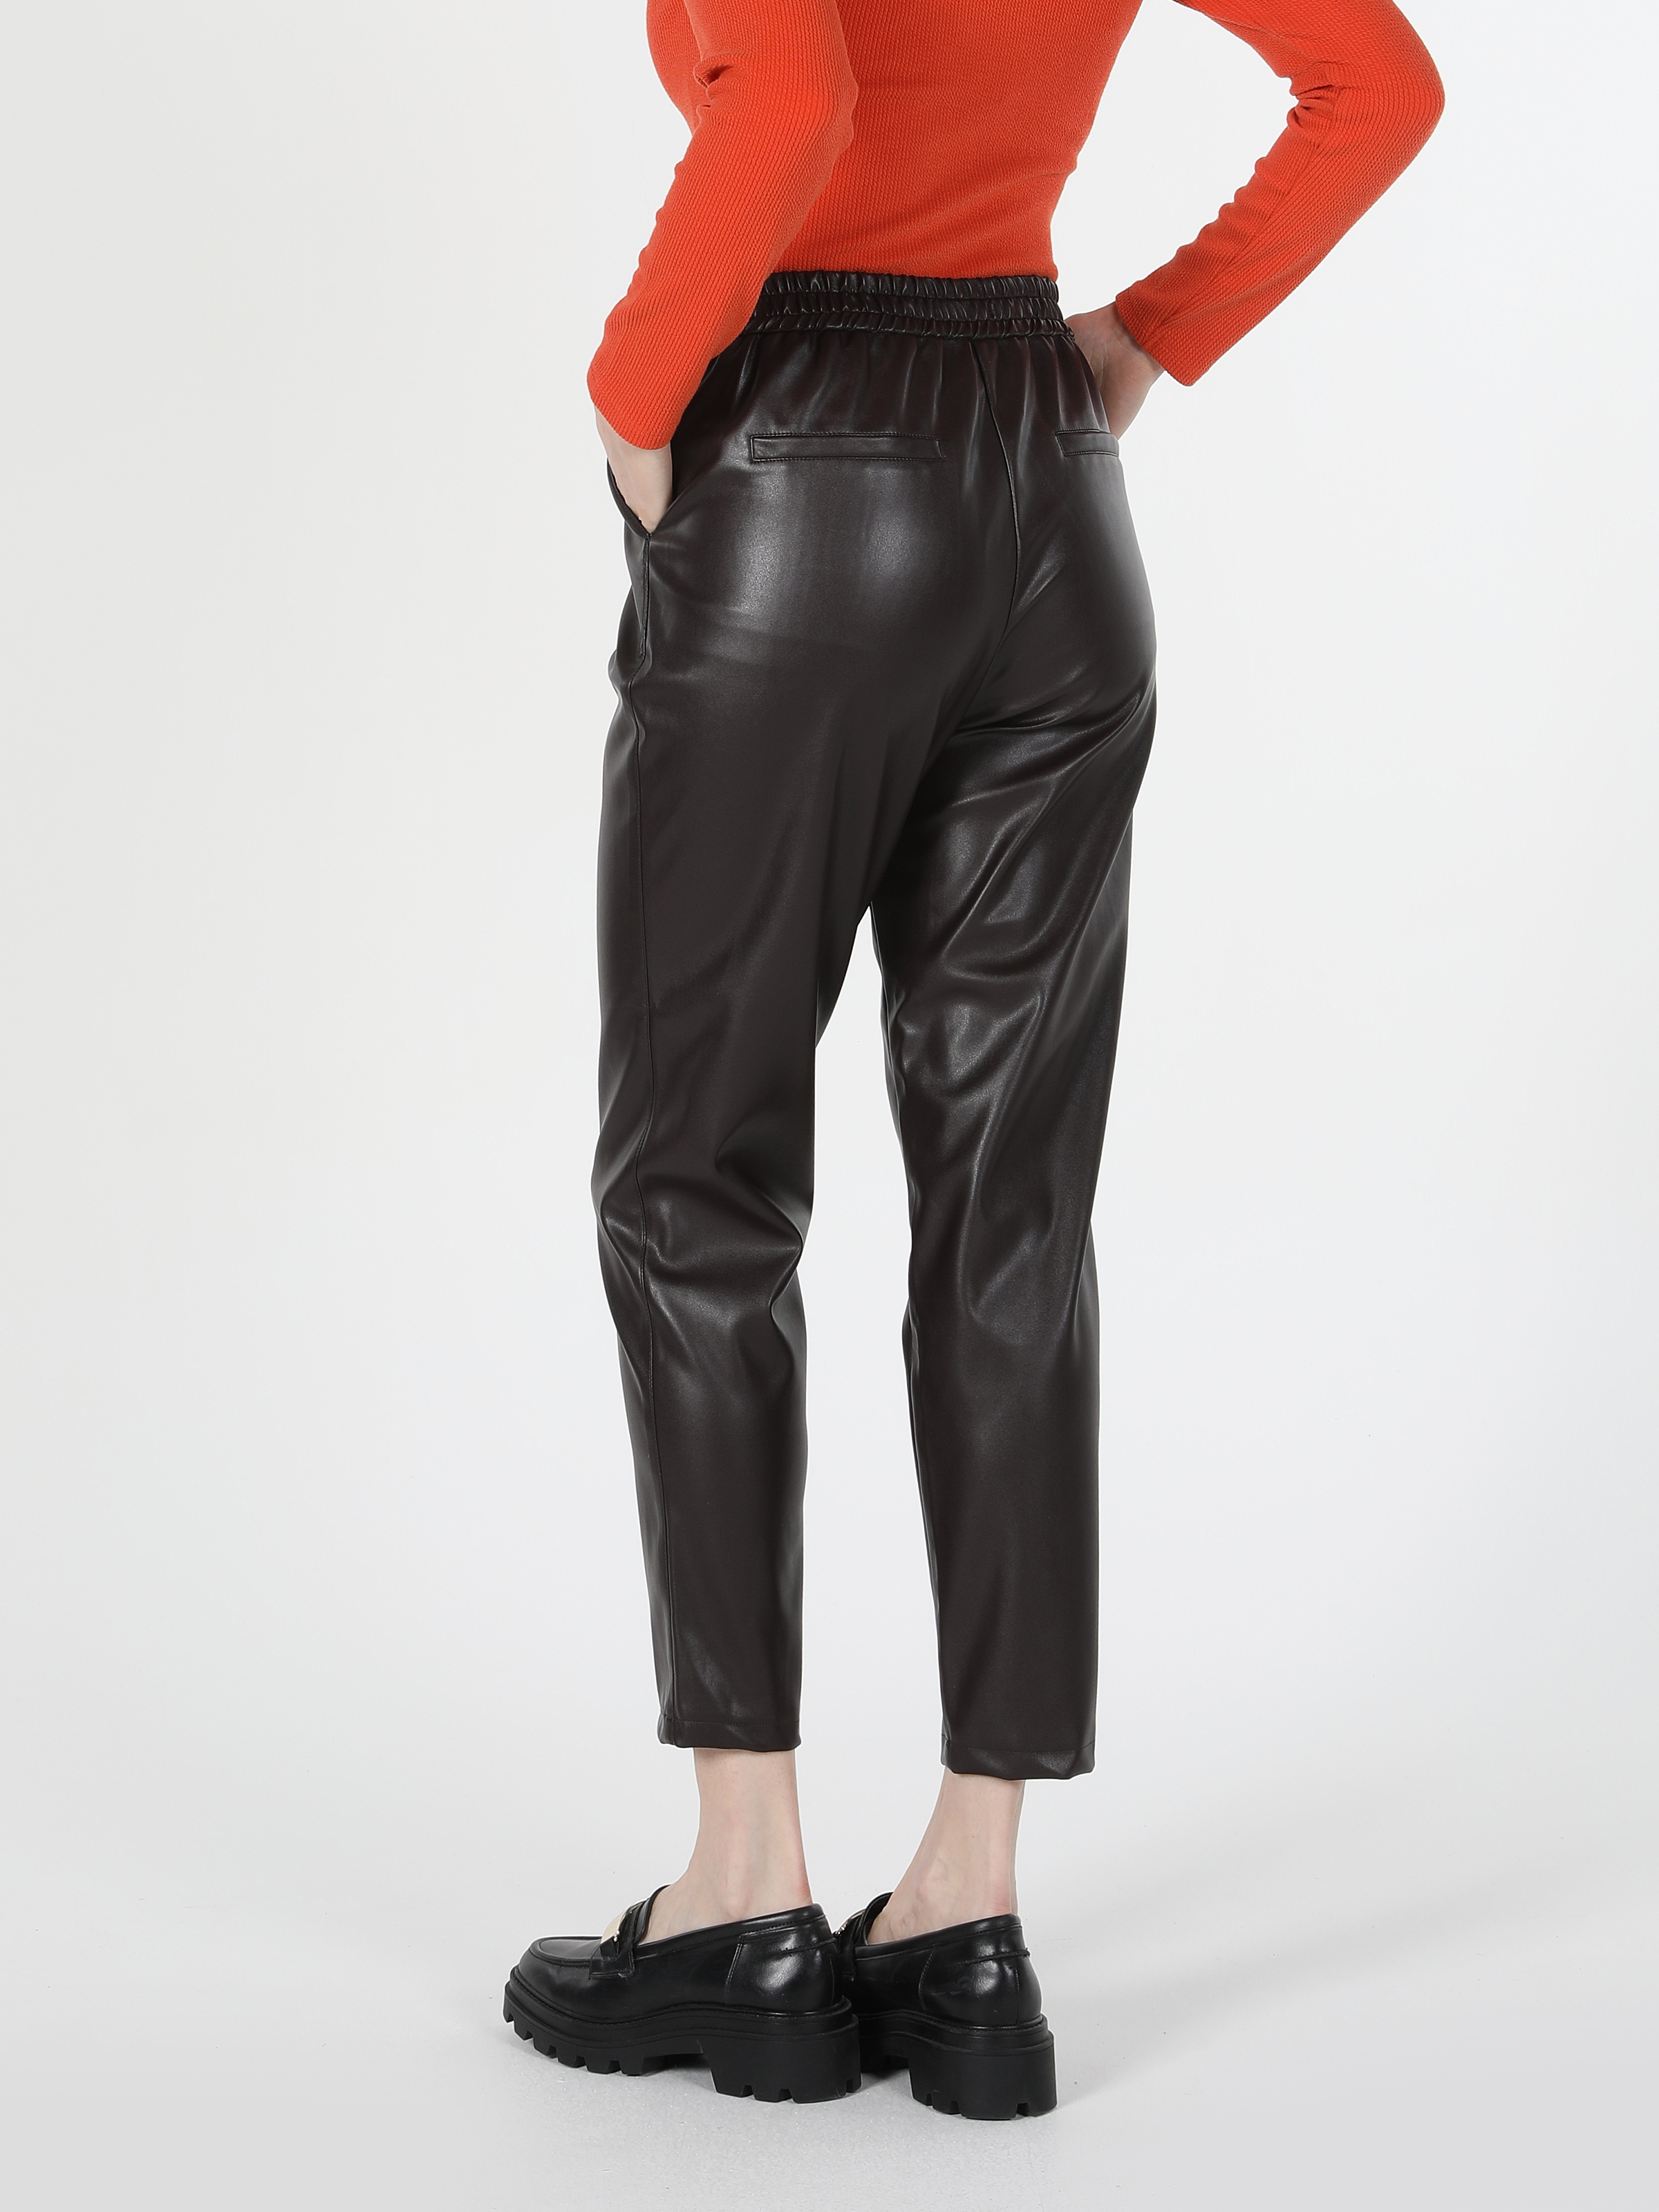 Afficher les détails de Pantalon En Cuir Marron Pour Femme, Coupe Normale, Taille Haute, Jambe Droite